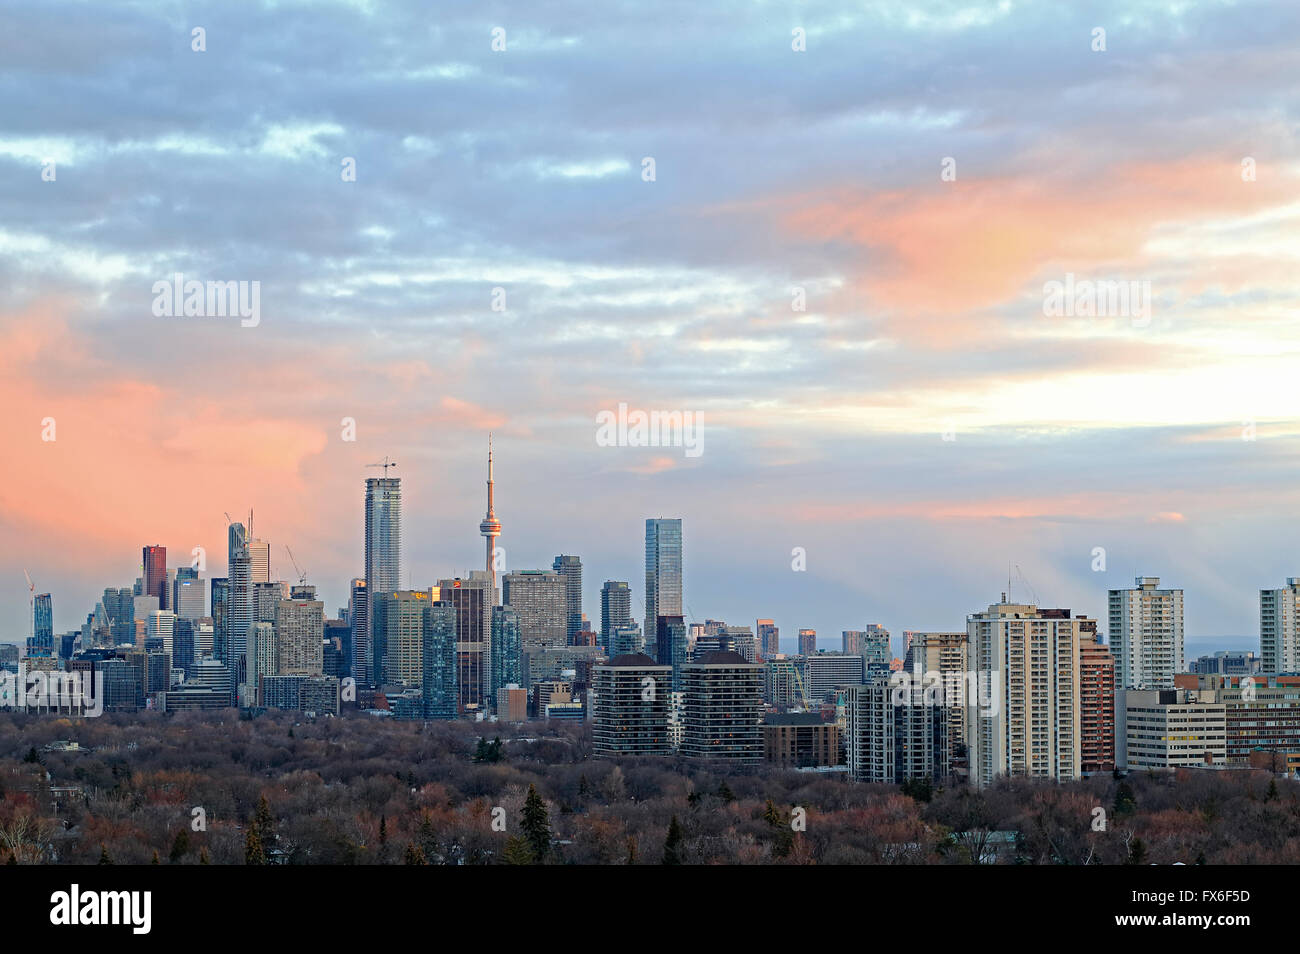 Horizonte de la ciudad de Toronto con importantes edificios histórico incluyendo la Torre CN, corporativos y edificios bancarios en downtown y Midtown, ingenio Foto de stock